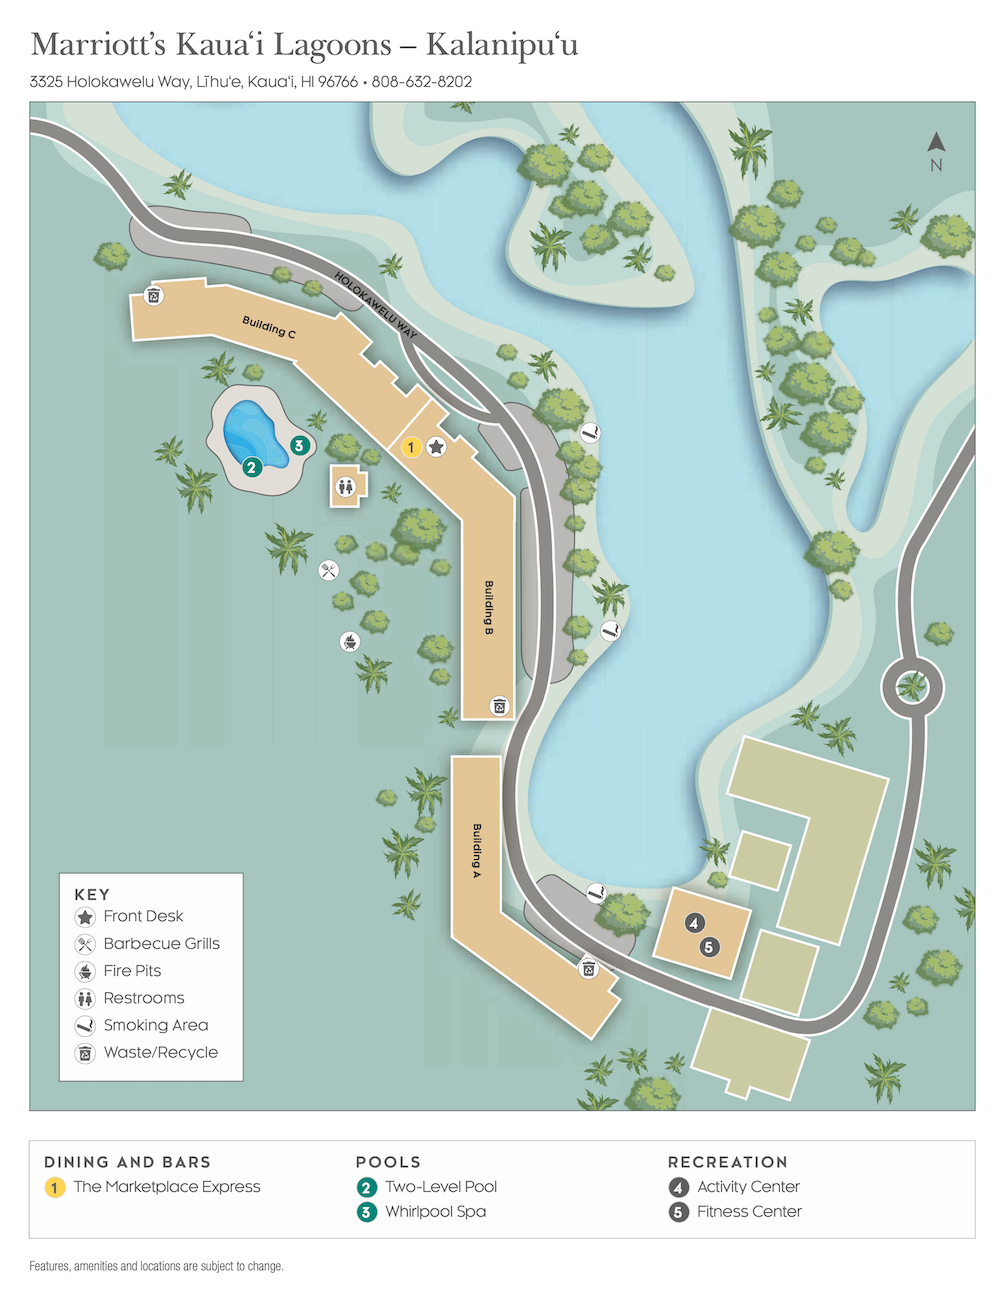 Marriott Kaua‘i Lagoons – Kalanipu‘u Resort Map